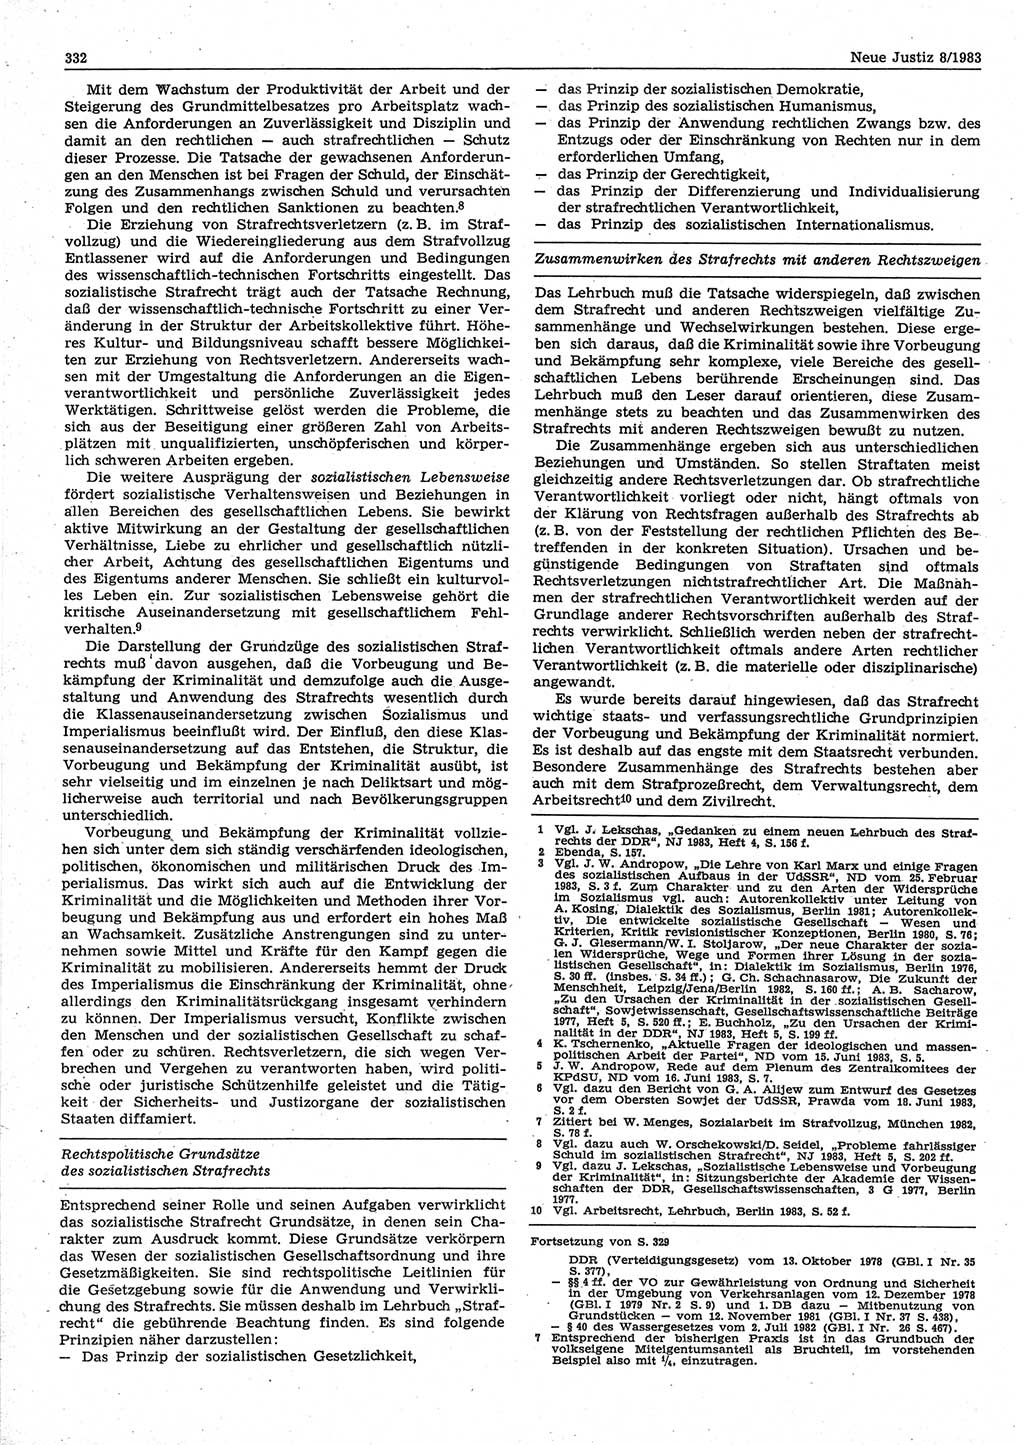 Neue Justiz (NJ), Zeitschrift für sozialistisches Recht und Gesetzlichkeit [Deutsche Demokratische Republik (DDR)], 37. Jahrgang 1983, Seite 332 (NJ DDR 1983, S. 332)